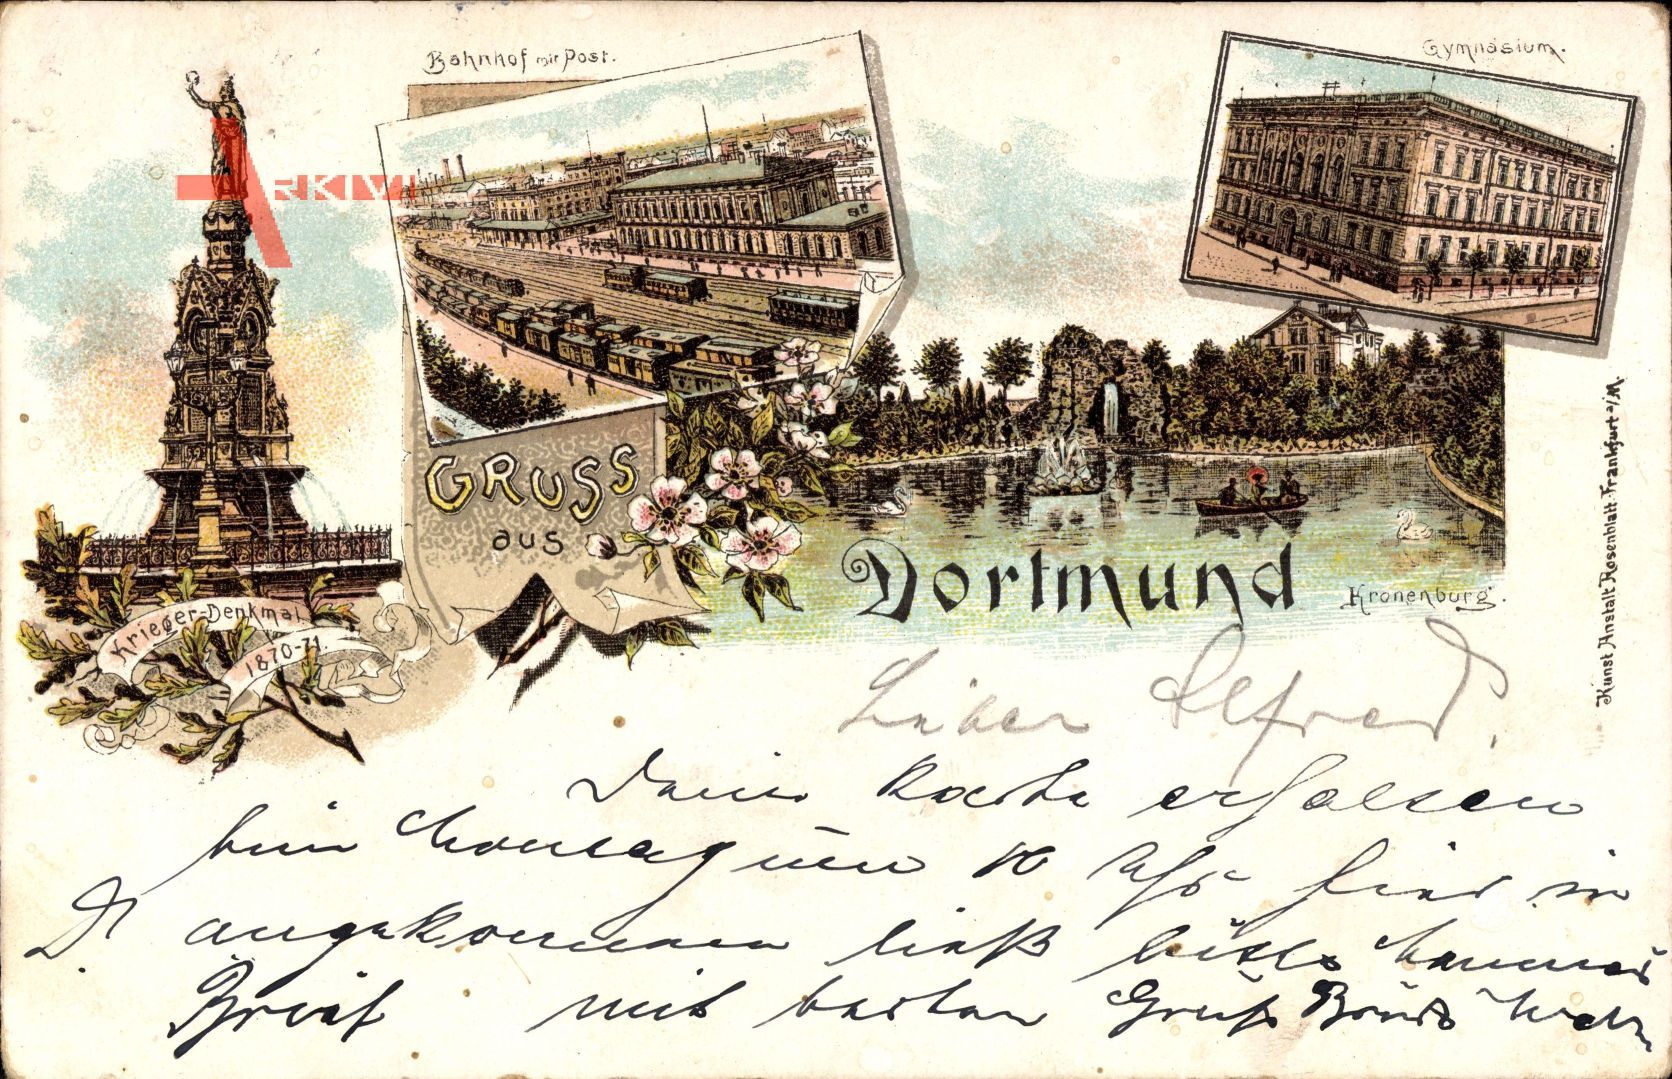 Dortmund, Kriegerdenkmal,Bahnhof mit Post, Gymnasium